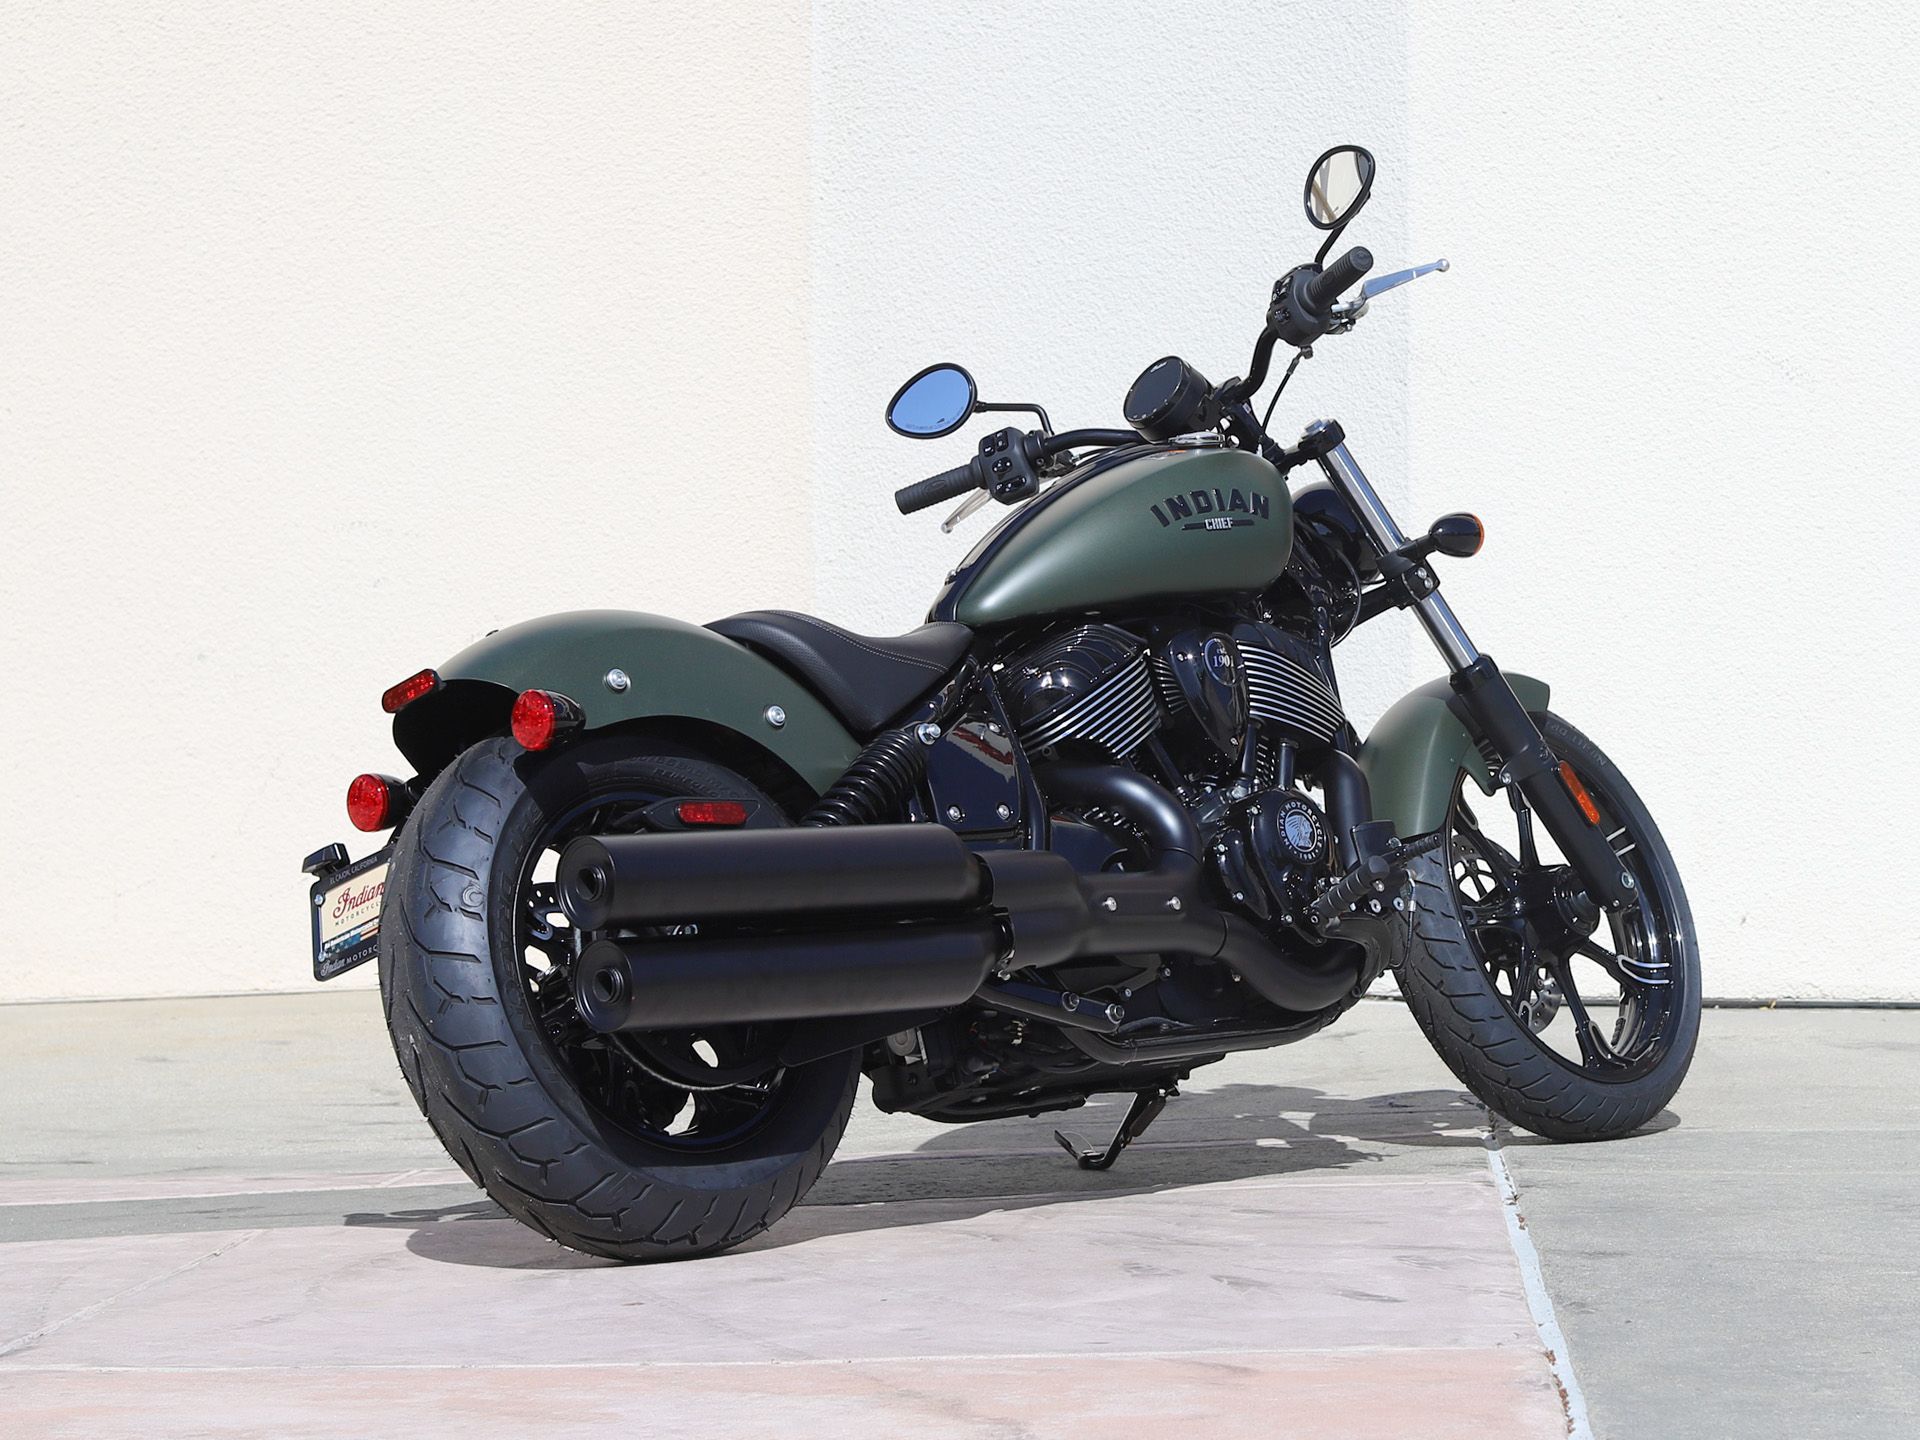 2023 Indian Motorcycle Chief Dark Horse® in EL Cajon, California - Photo 8